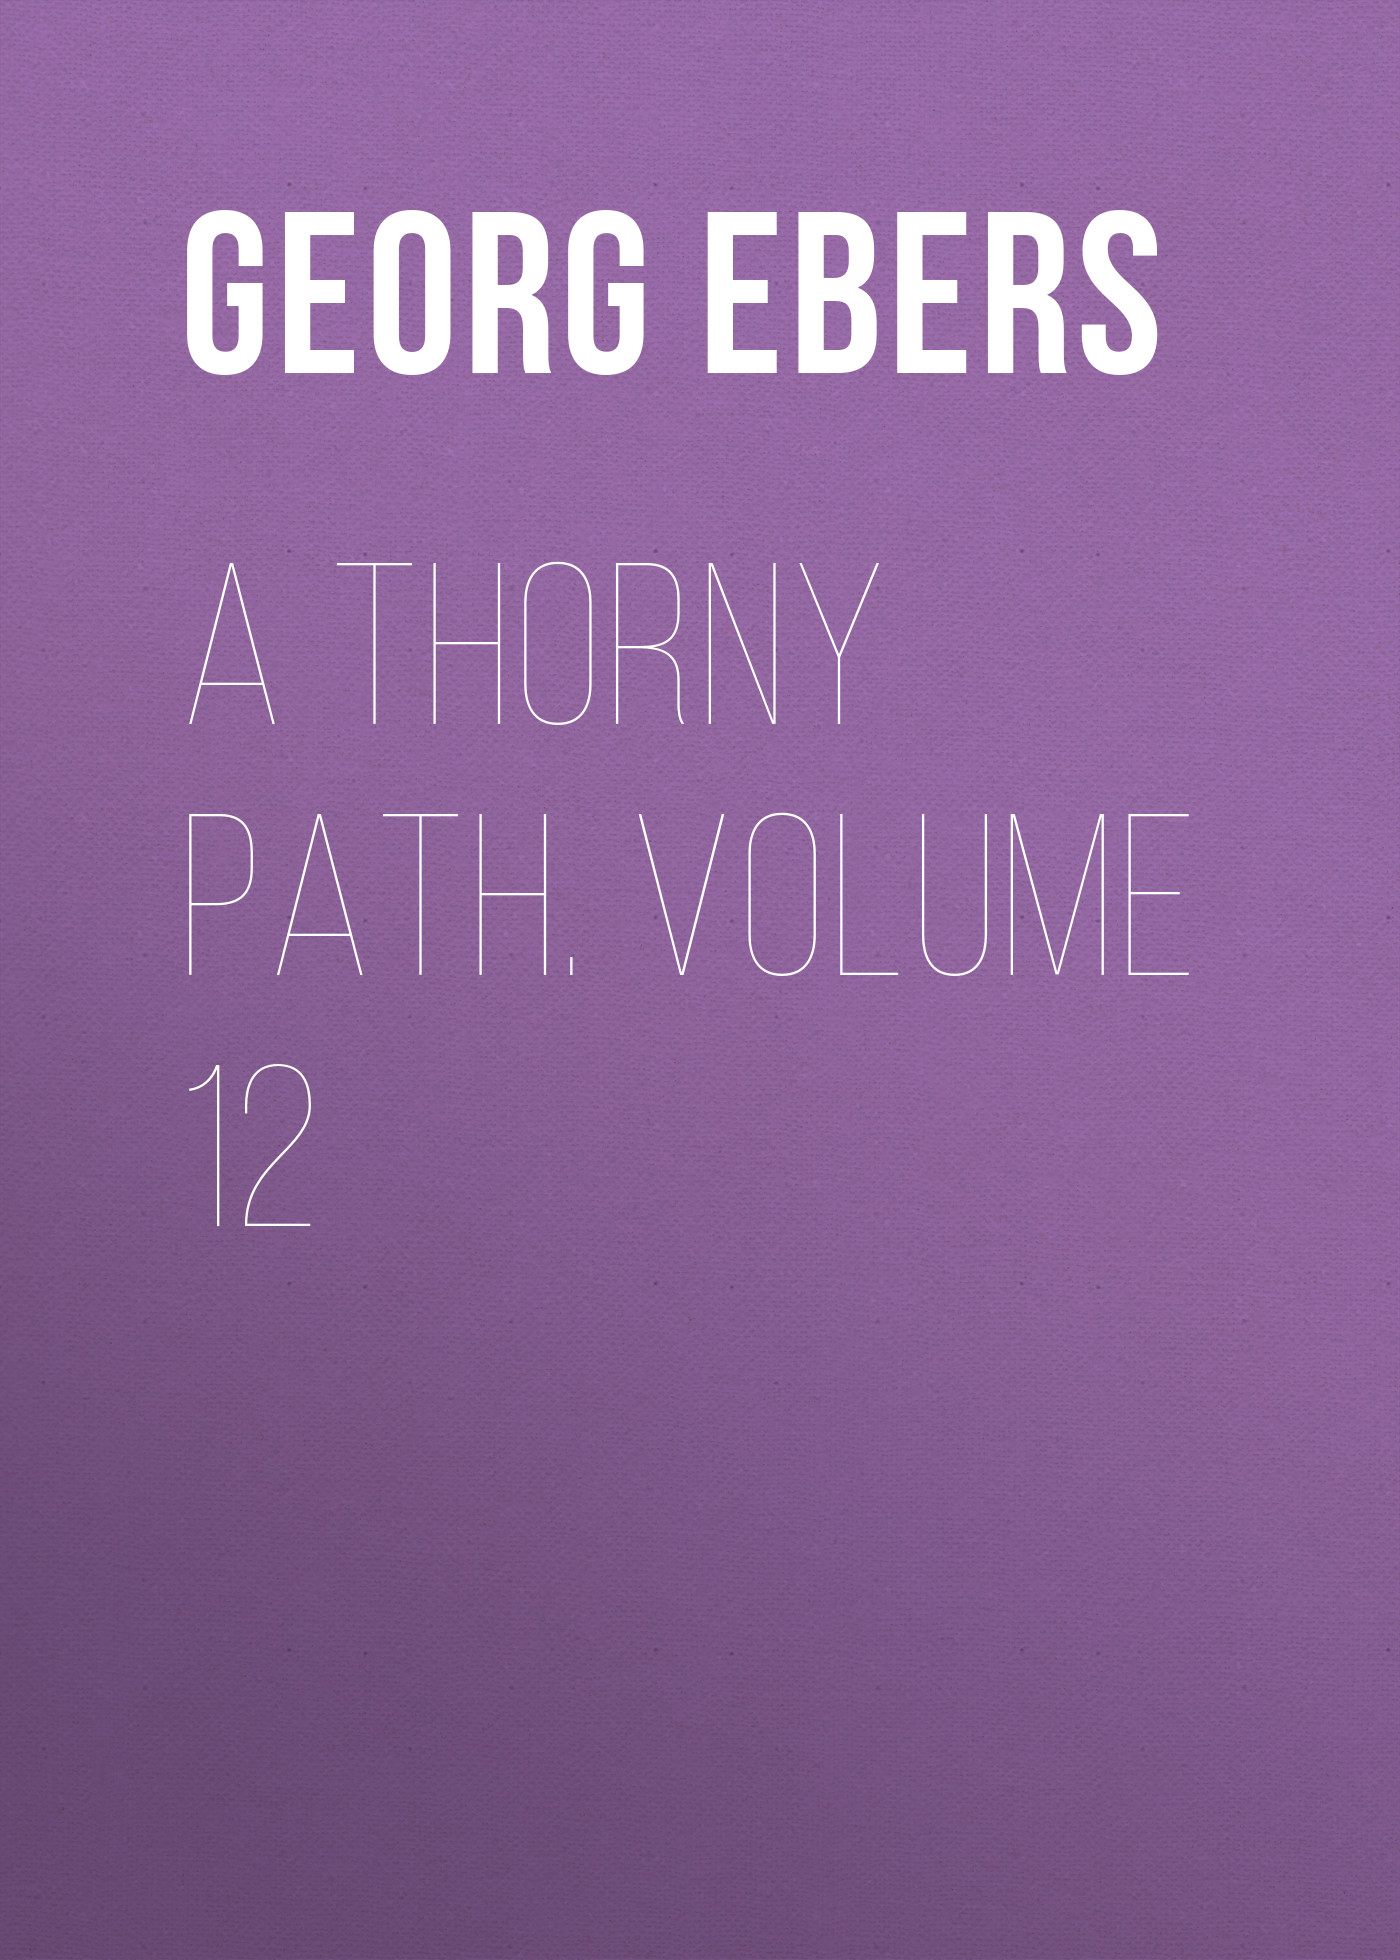 Книга A Thorny Path. Volume 12 из серии , созданная Georg Ebers, может относится к жанру Зарубежная классика, Зарубежная старинная литература. Стоимость электронной книги A Thorny Path. Volume 12 с идентификатором 42628139 составляет 0 руб.